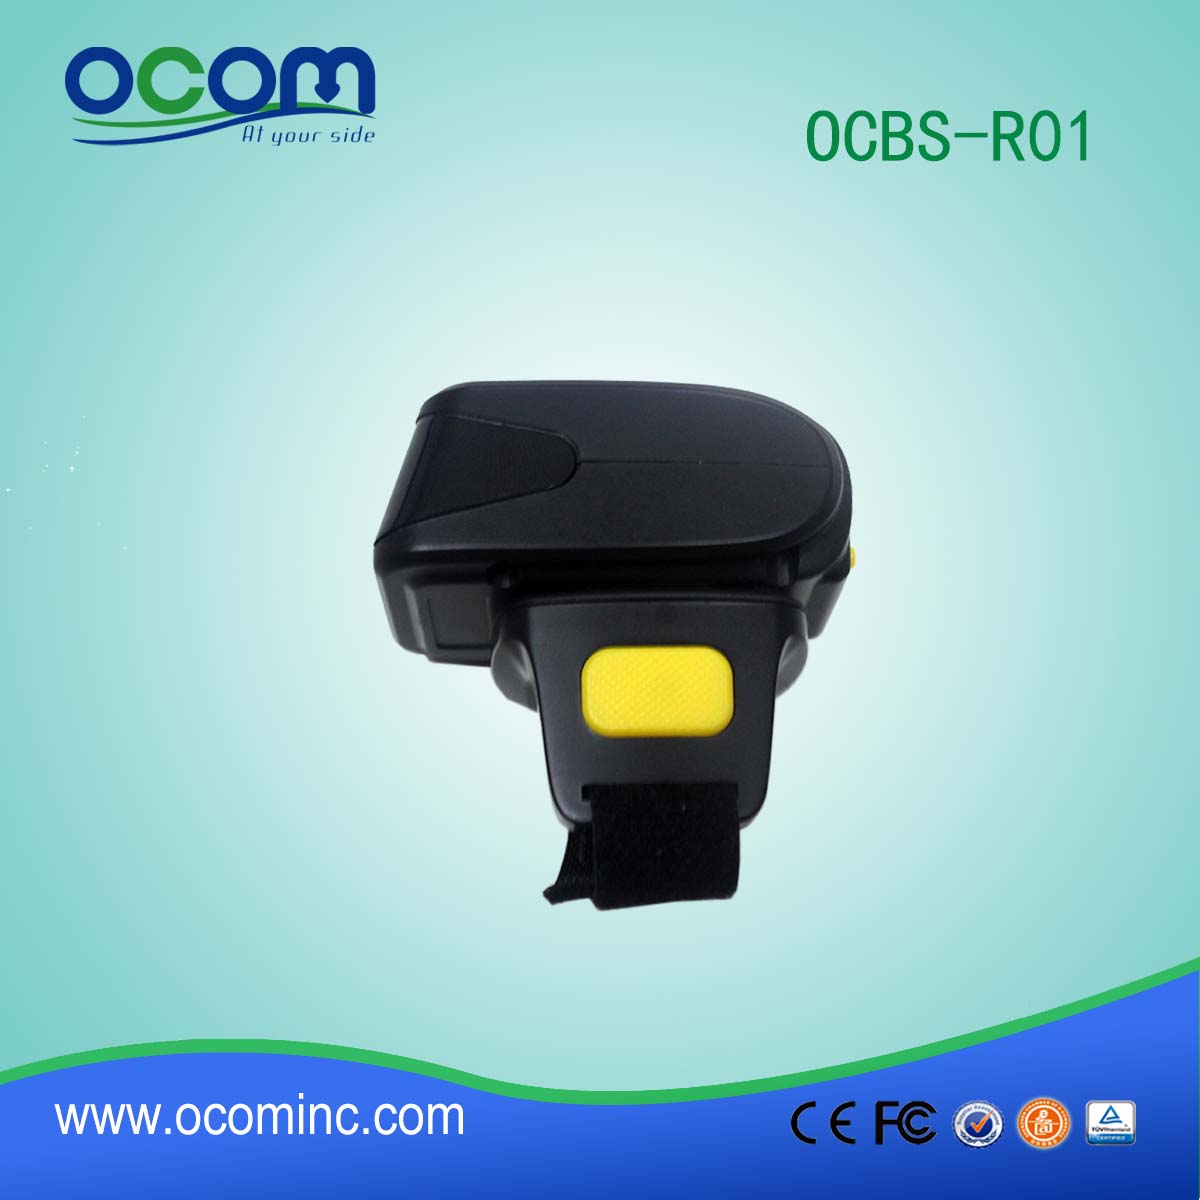 OCBS-R01 1D bezprzewodowy skaner kodów kreskowych Bluetooth